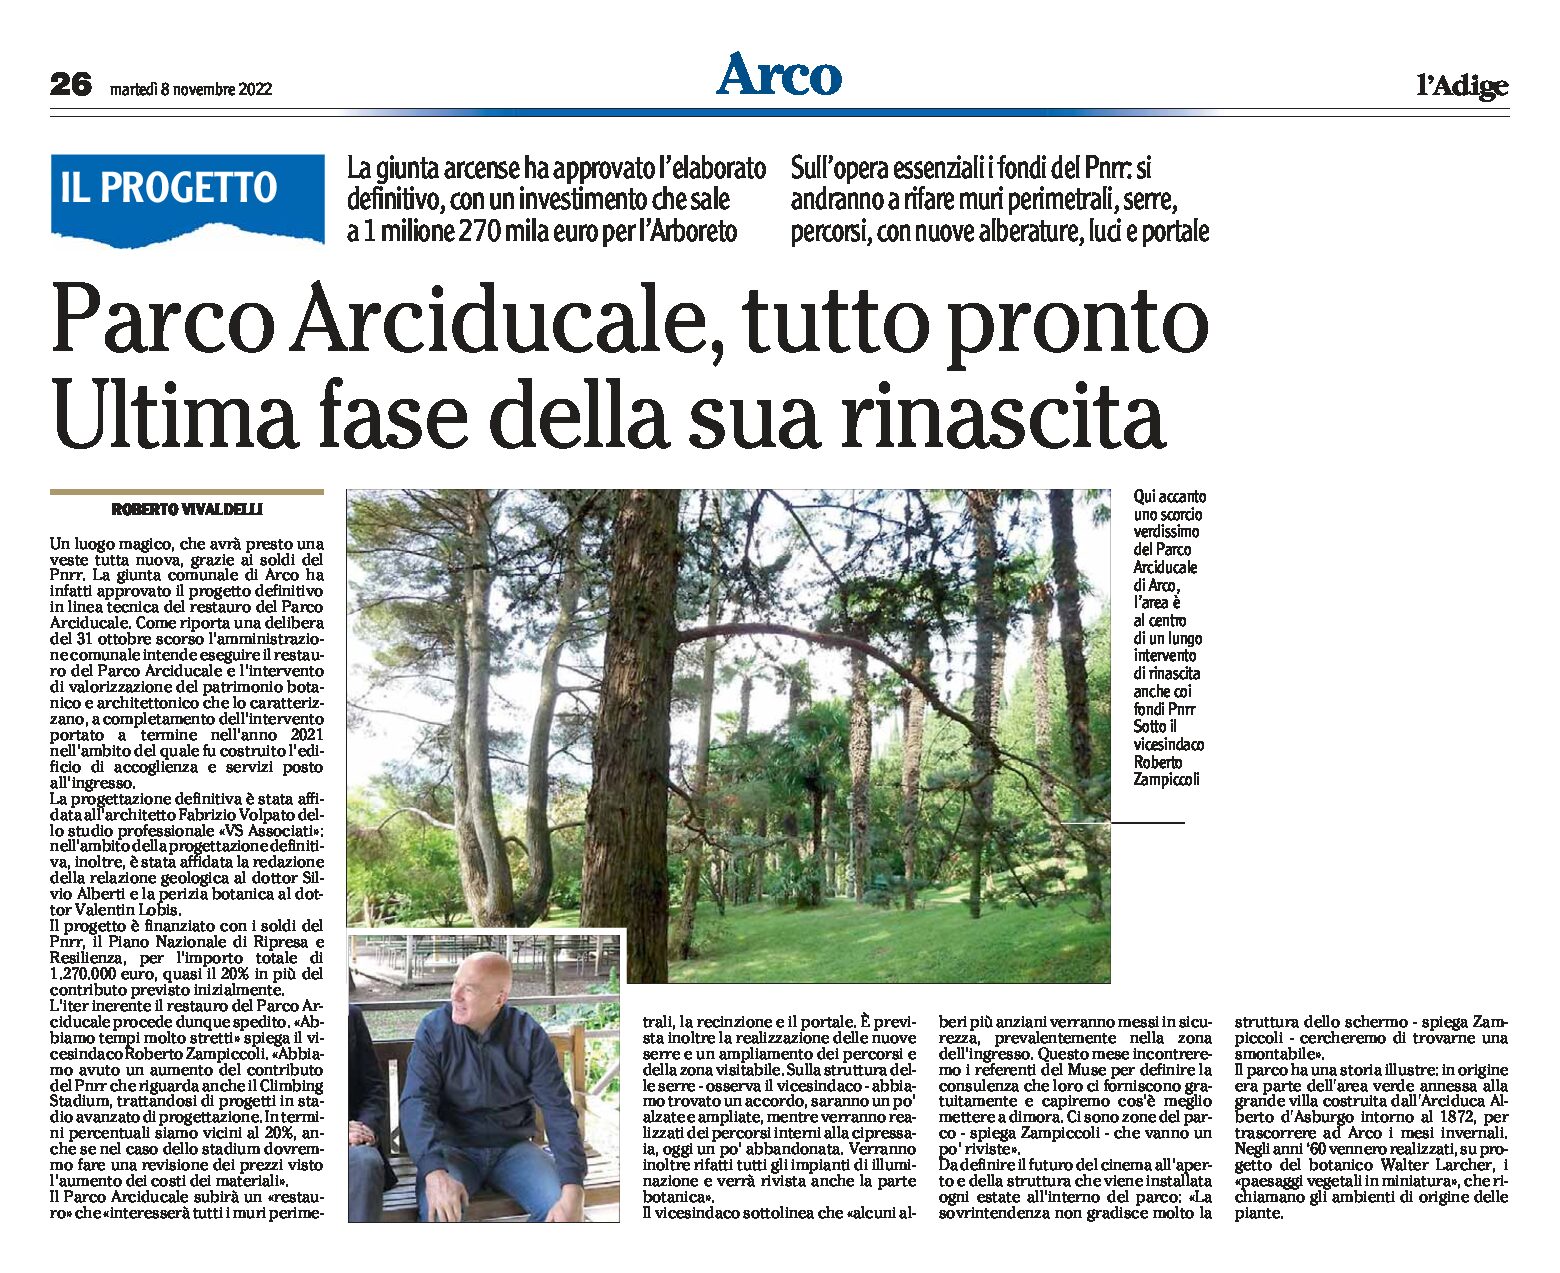 Arco, Parco Arciducale: approvato il progetto definitivo del restauro